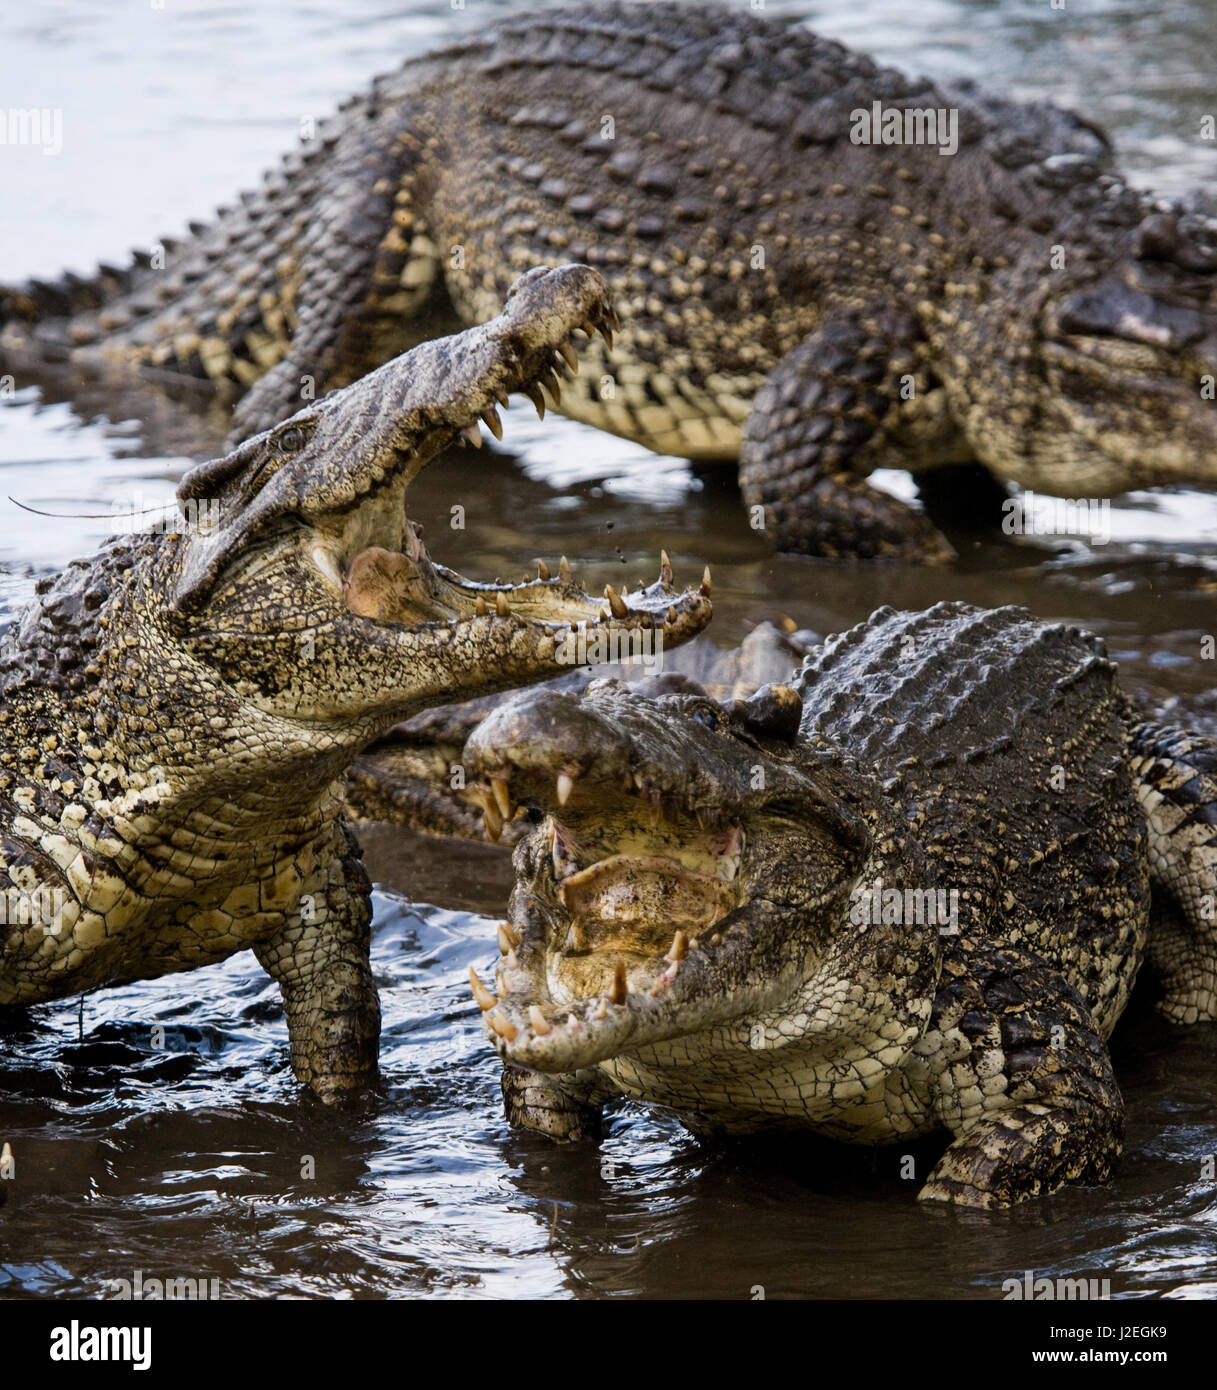 Crocodile jump -Fotos und -Bildmaterial in hoher Auflösung - Seite 2 - Alamy